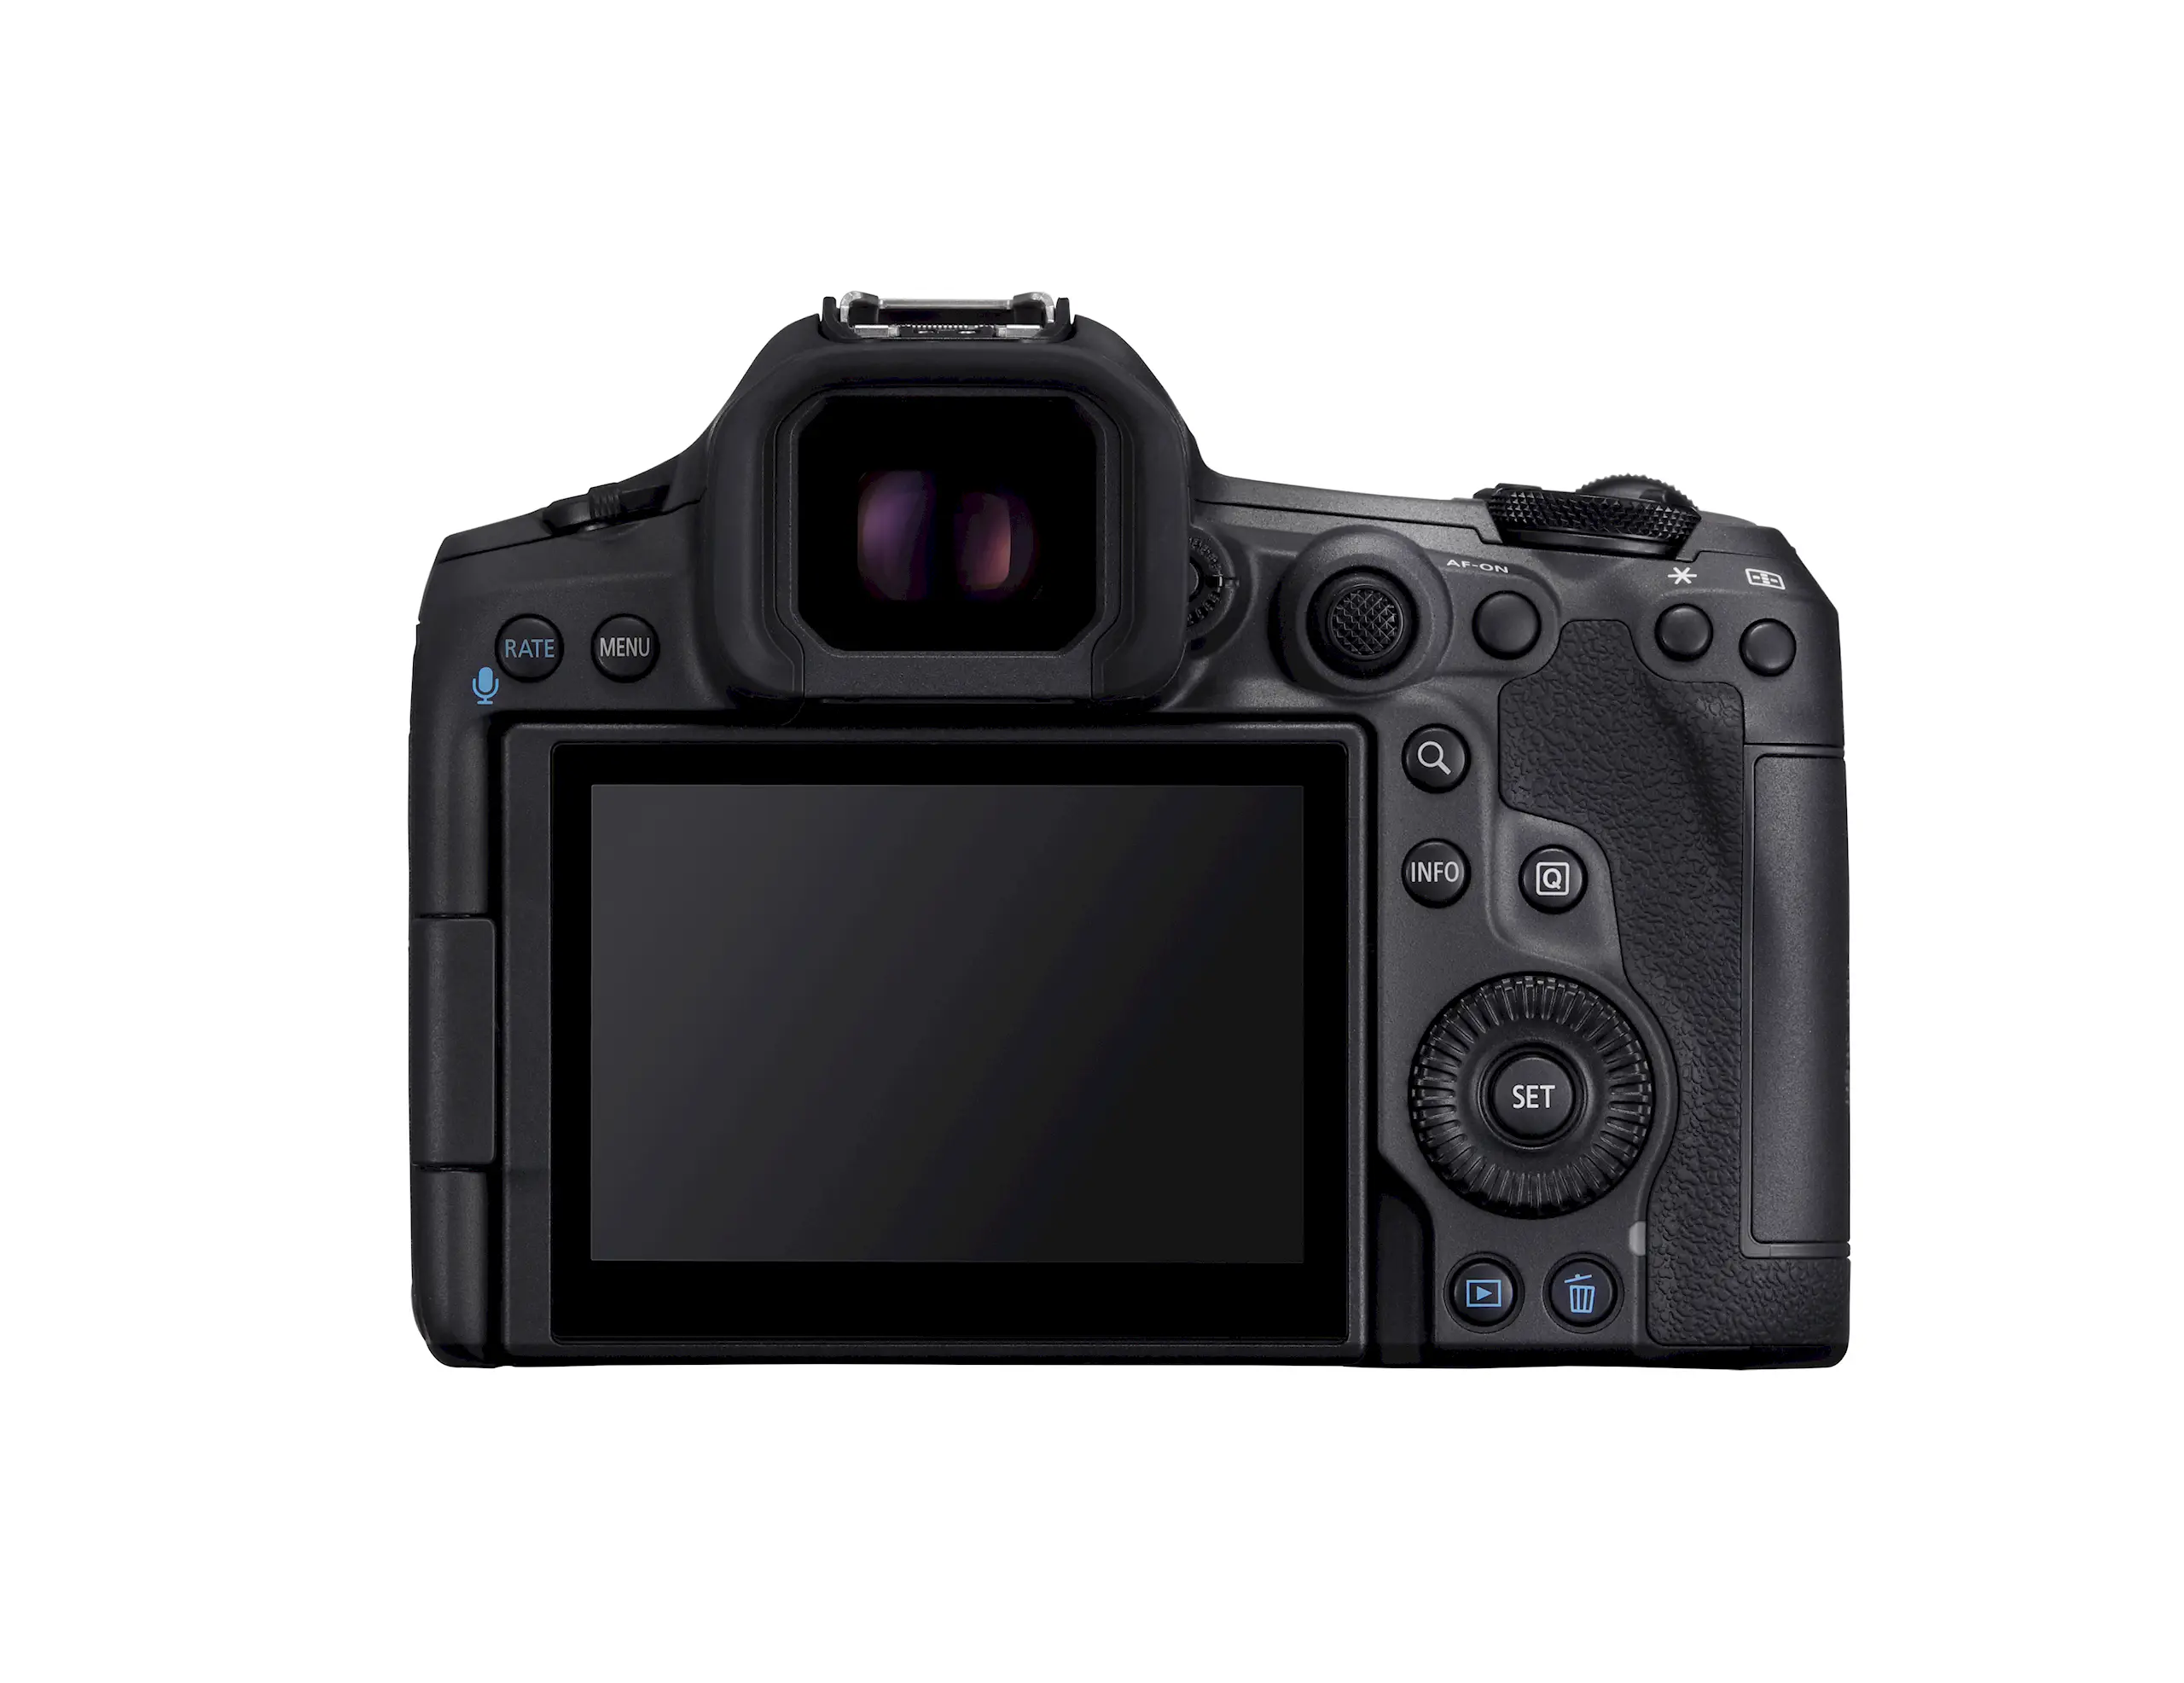 Máy ảnh Canon EOS R5 Mark II ra mắt với các công nghệ hình ảnh thế hệ mới